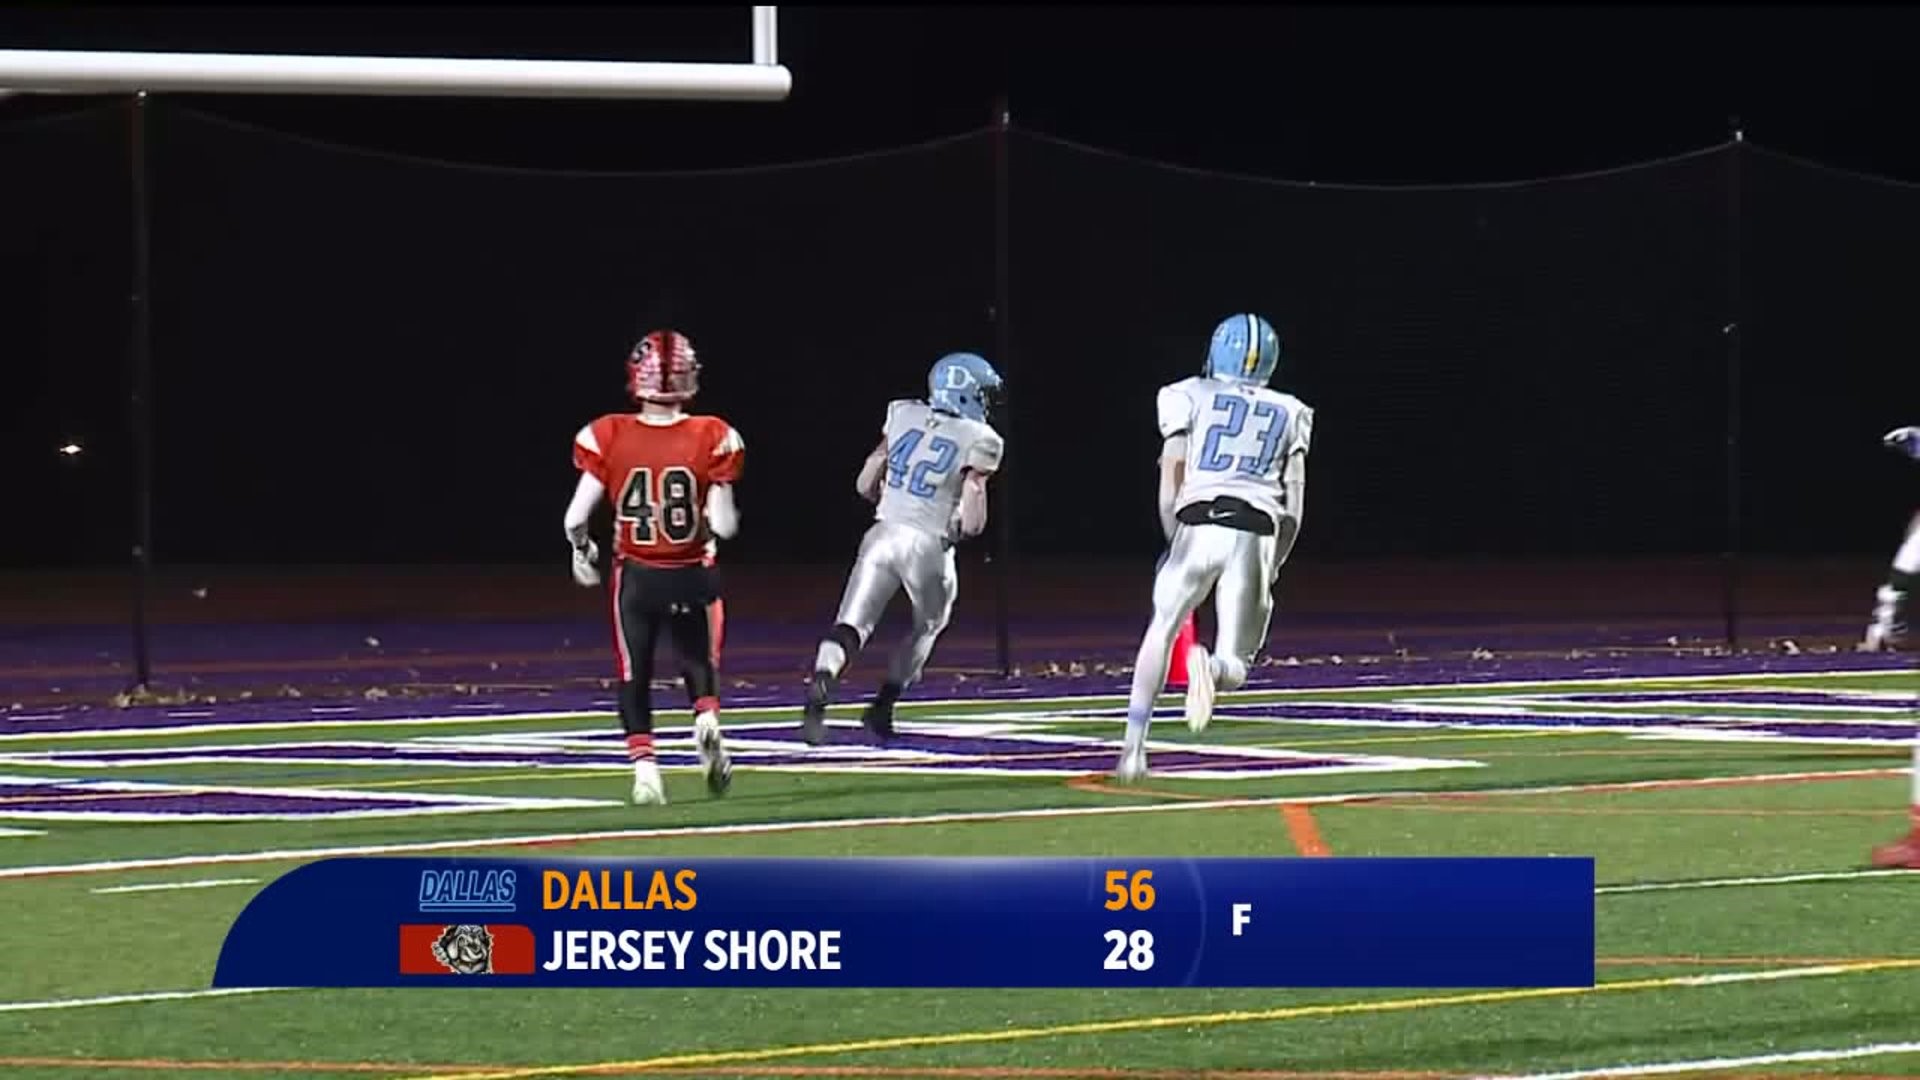 Dallas vs Jersey Shore football